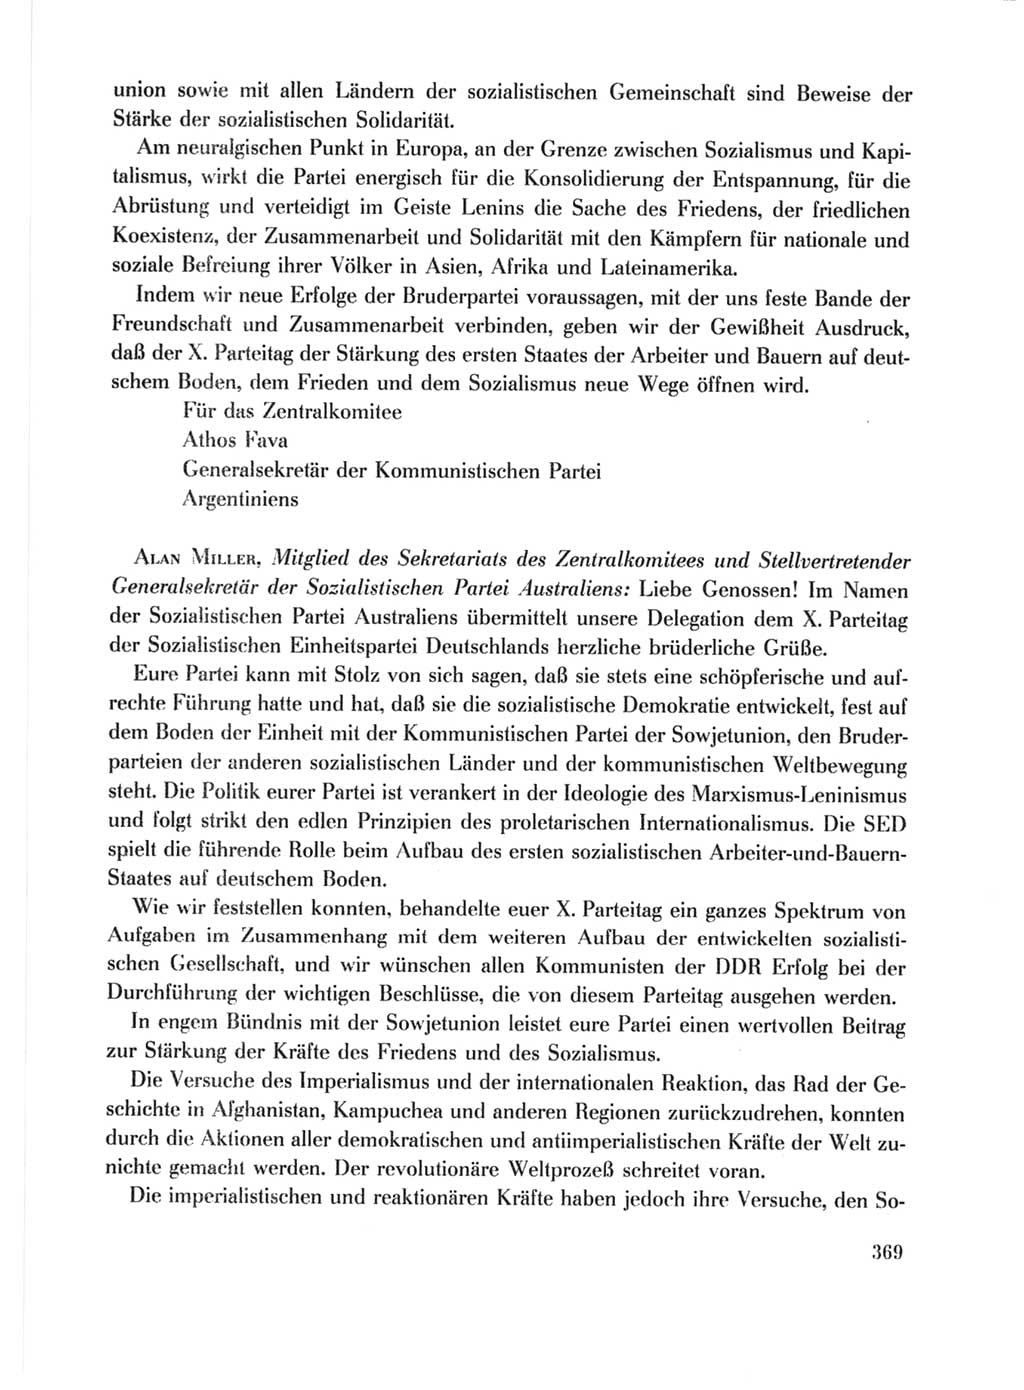 Protokoll der Verhandlungen des Ⅹ. Parteitages der Sozialistischen Einheitspartei Deutschlands (SED) [Deutsche Demokratische Republik (DDR)] 1981, Band 1, Seite 369 (Prot. Verh. Ⅹ. PT SED DDR 1981, Bd. 1, S. 369)